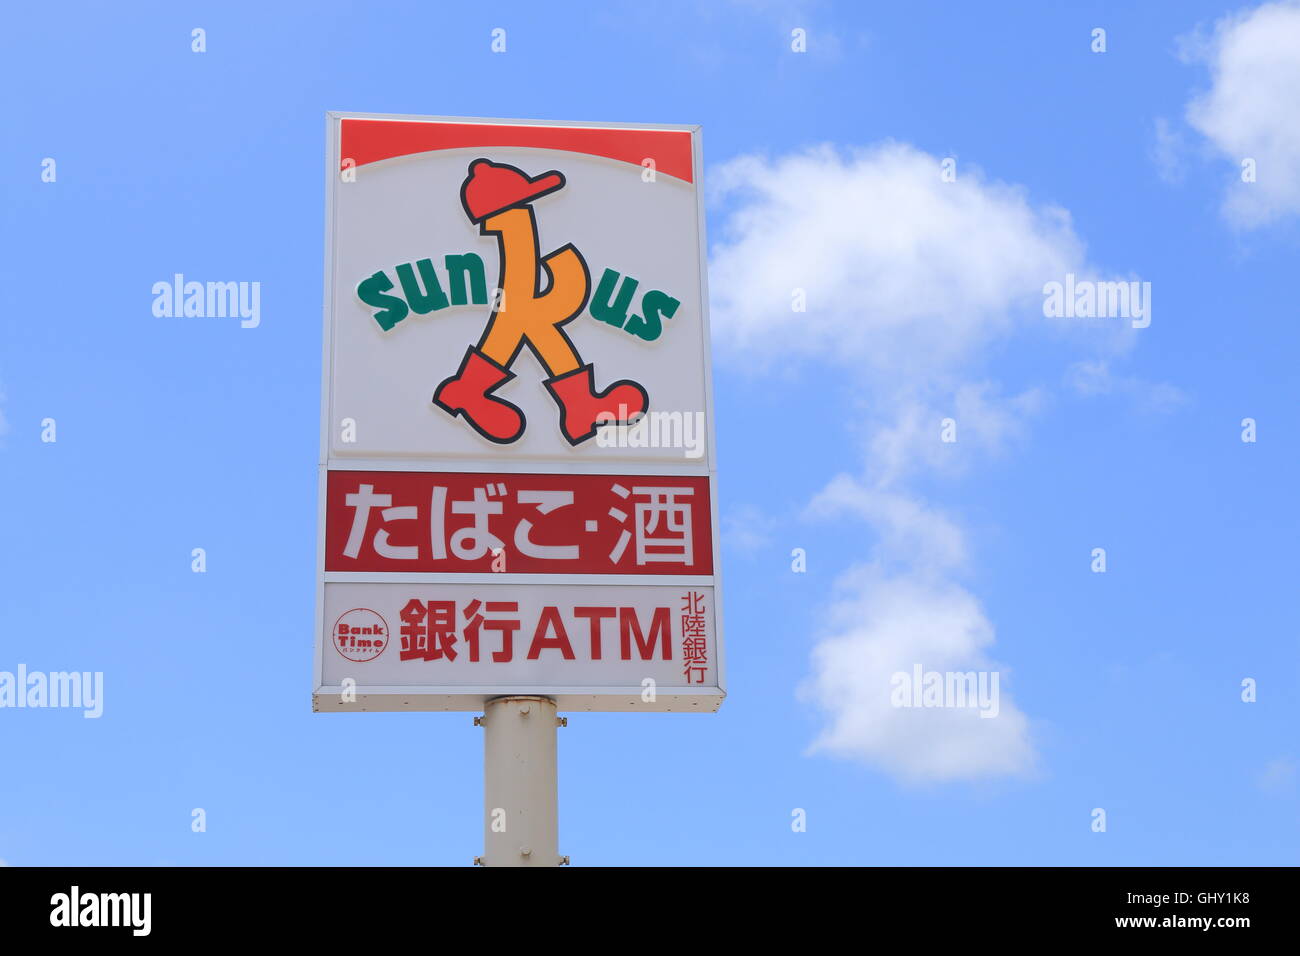 Sunkus japanischen Convenience-Store, eine Kette von japanischen Convenience-Stores im Jahr 2001 gegründet Stockfoto